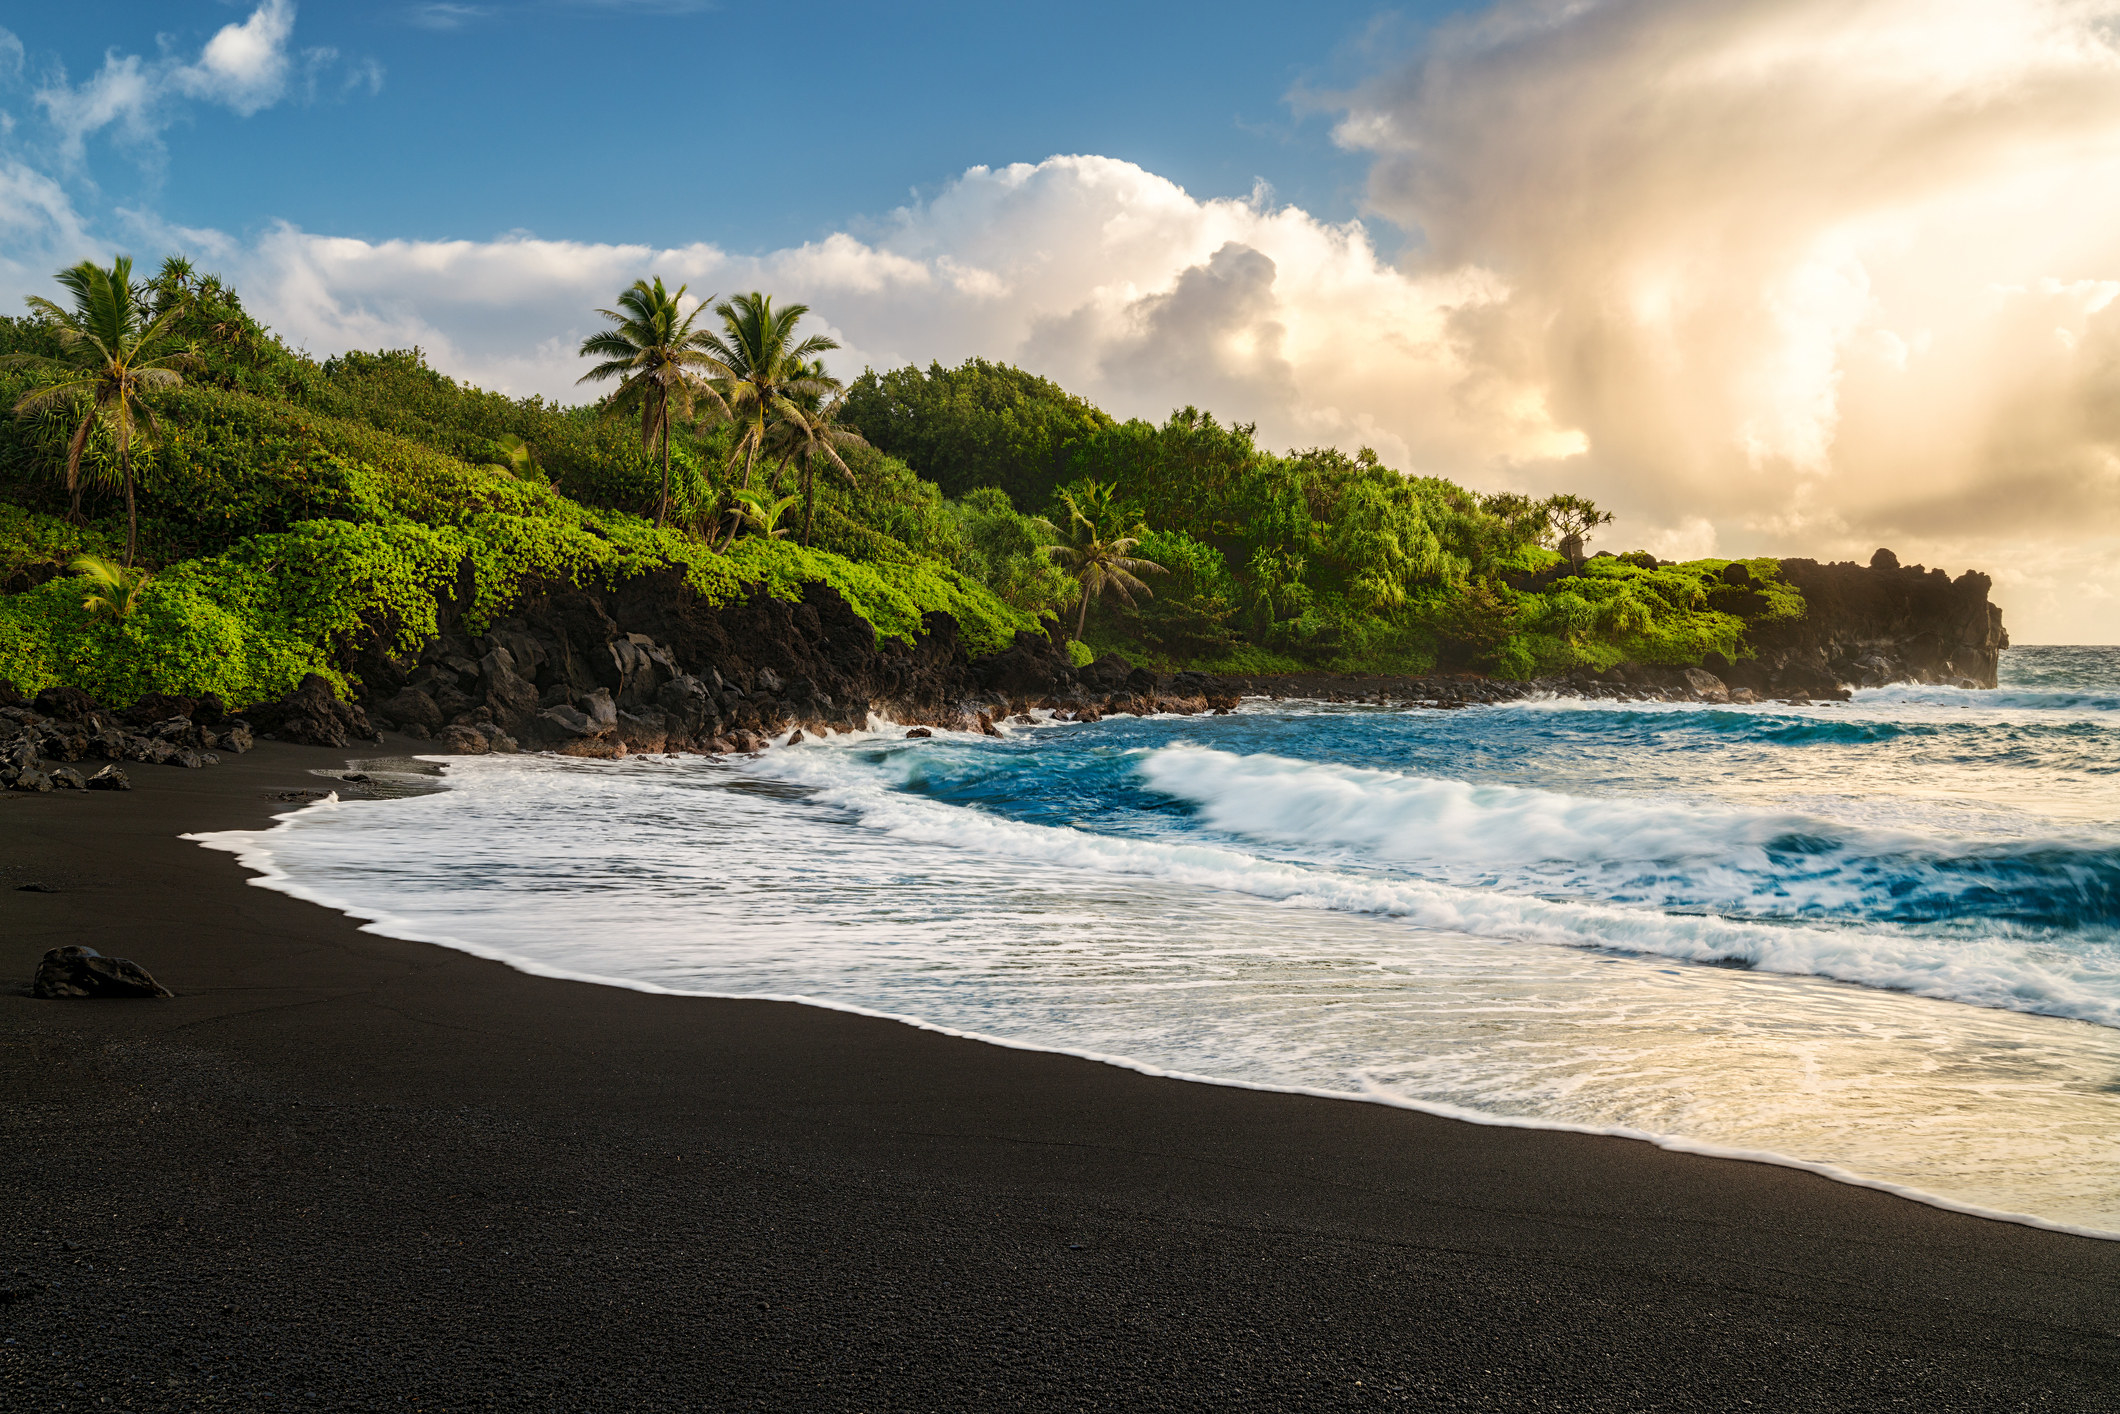 A tropical black sand beach.